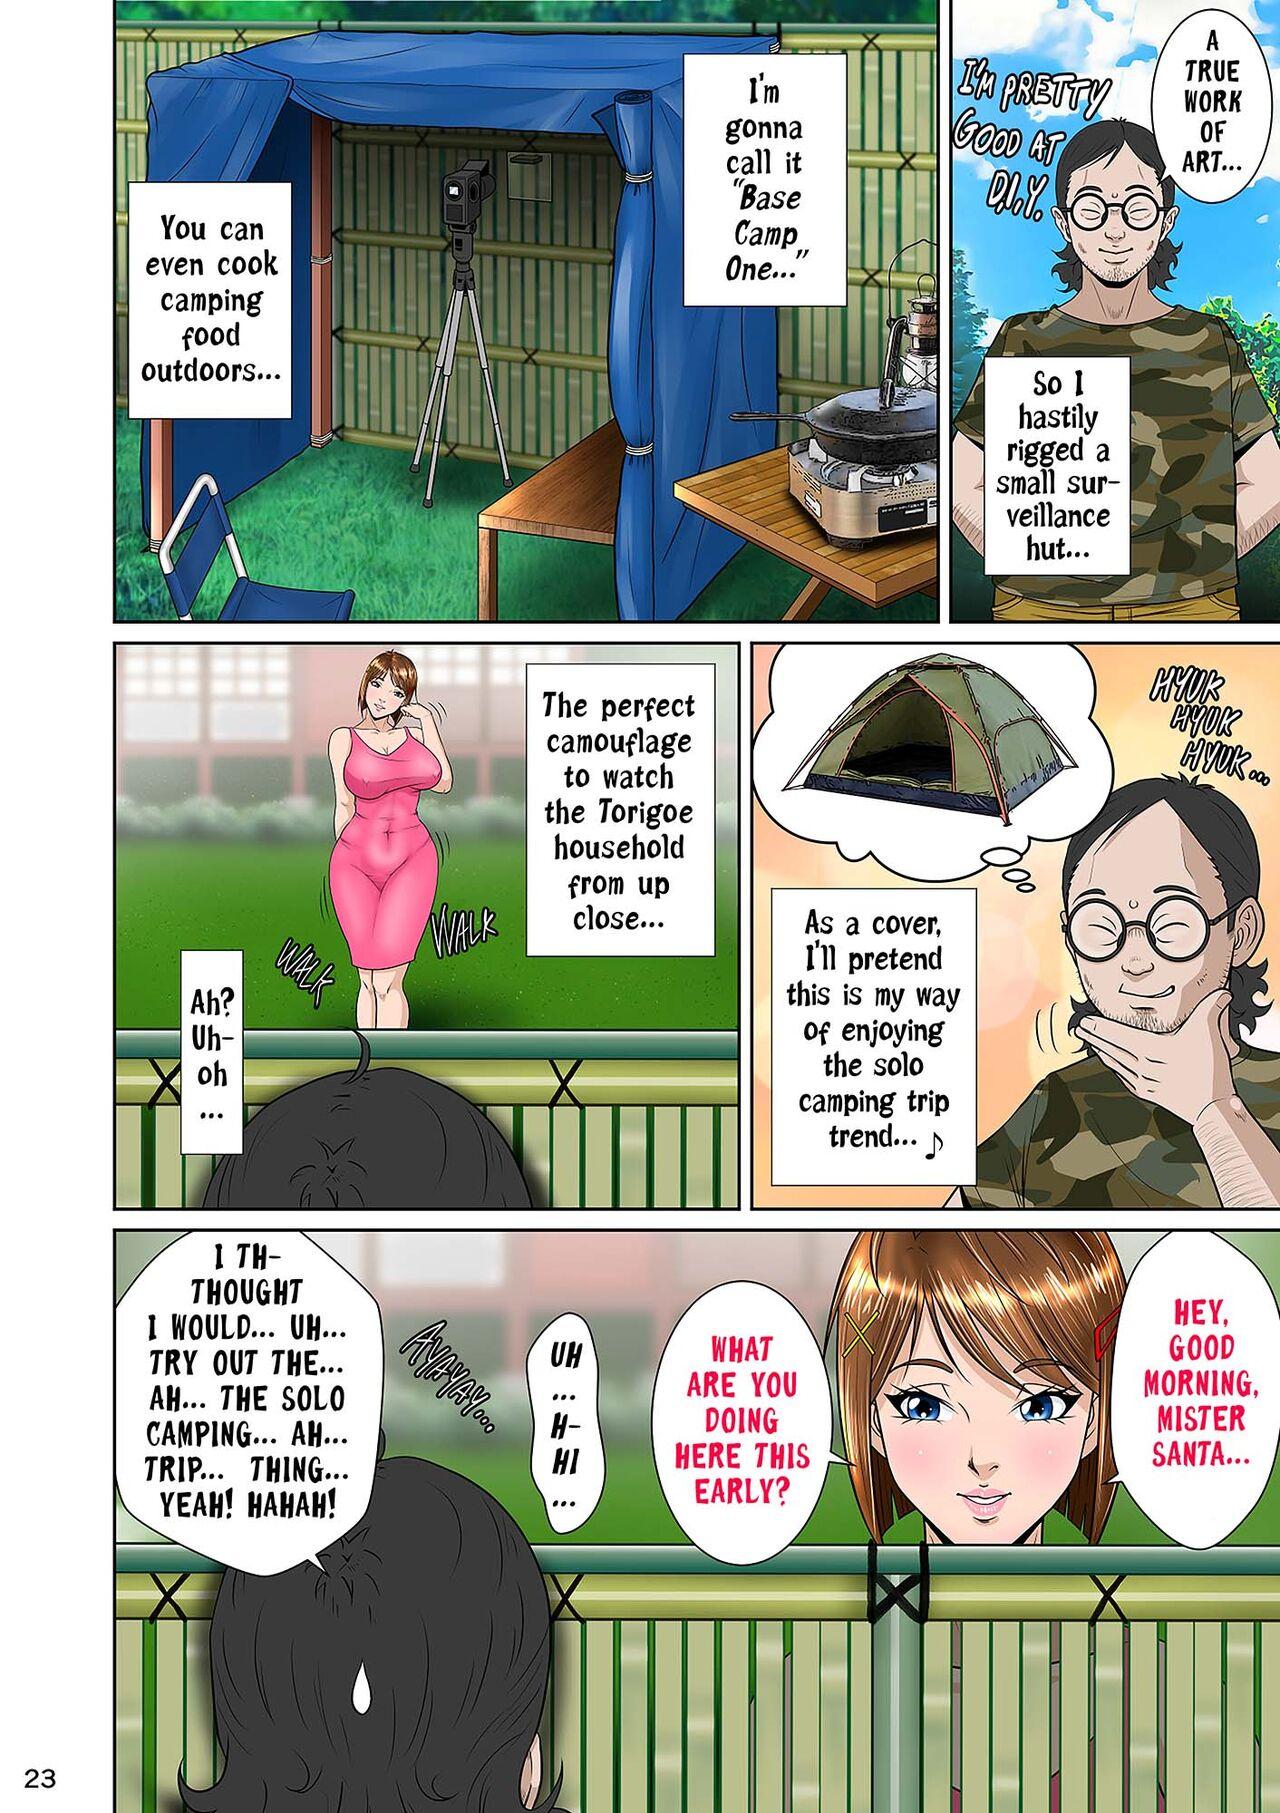 Kakine tsuma II daiichiwa | Wife on the Fence II - Chapter 3 33